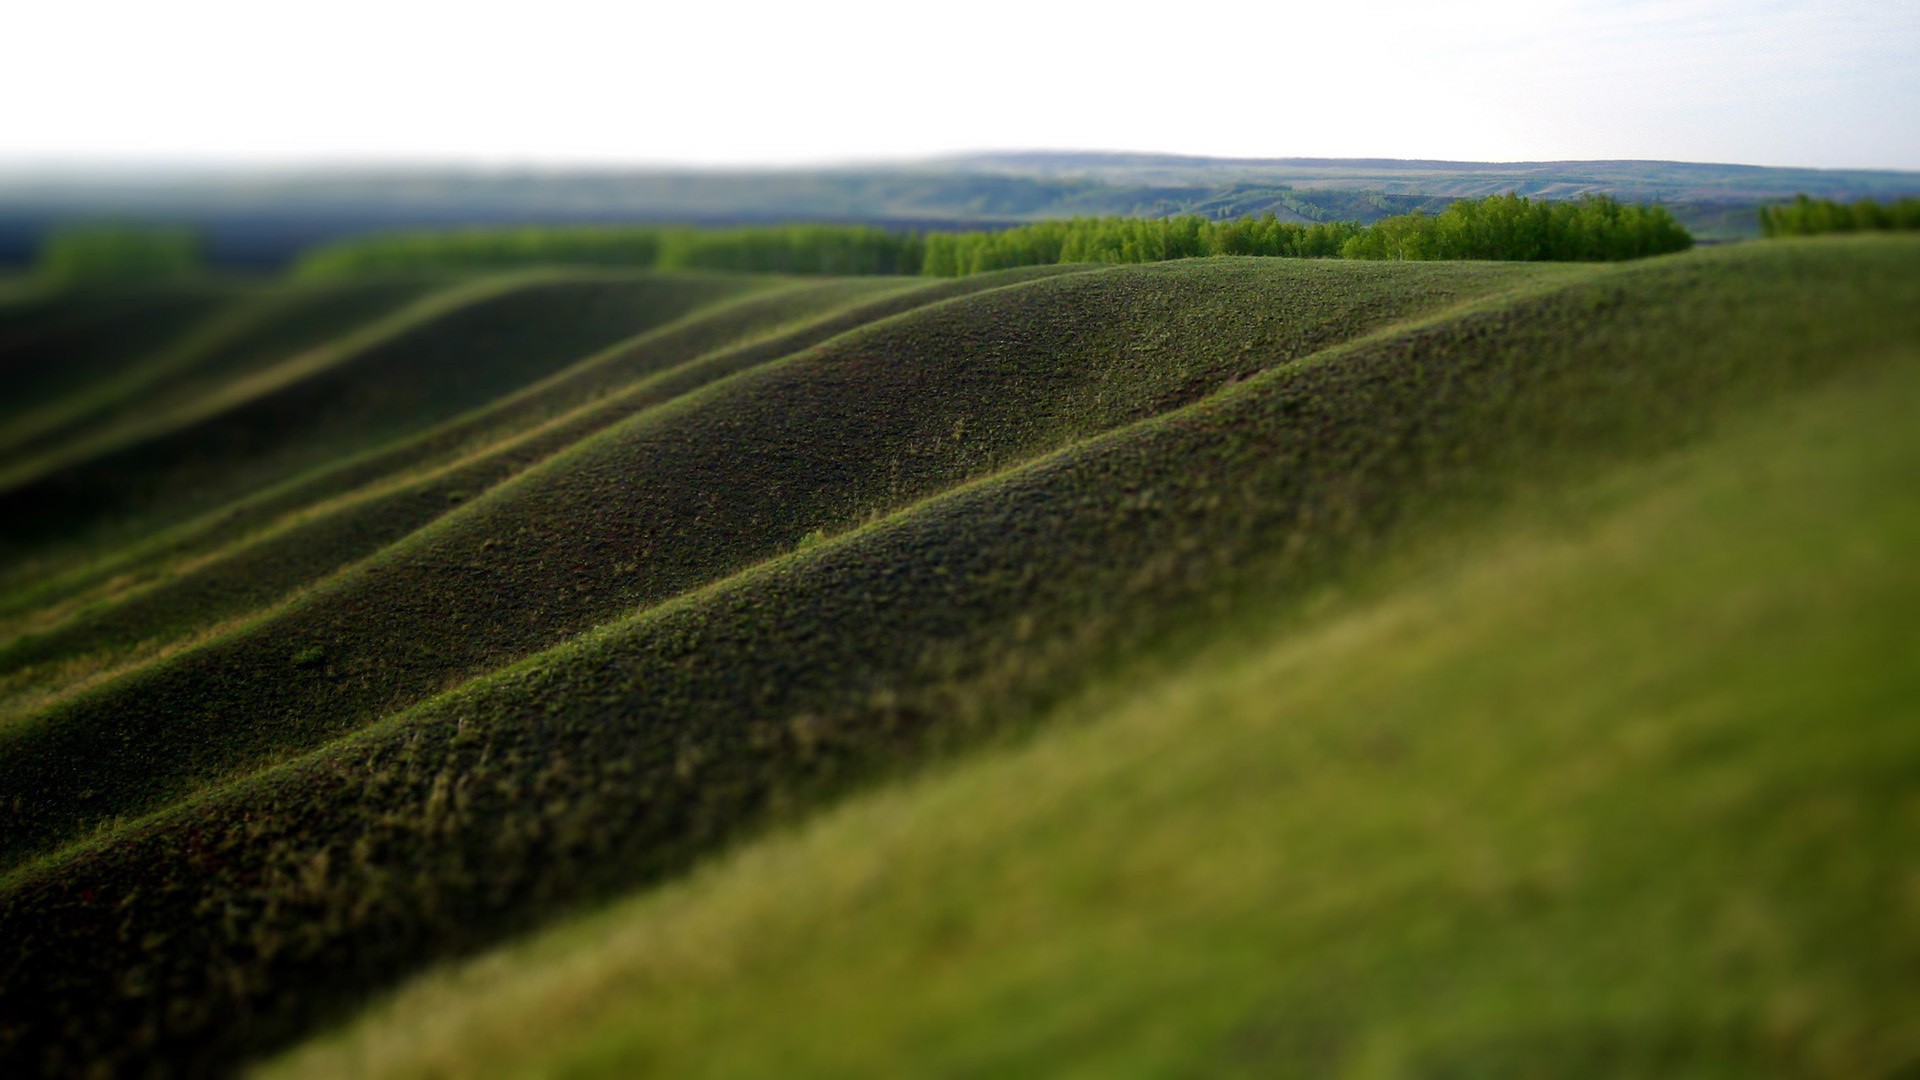 General 1920x1080 blurred landscape grass hills tilt shift field outdoors